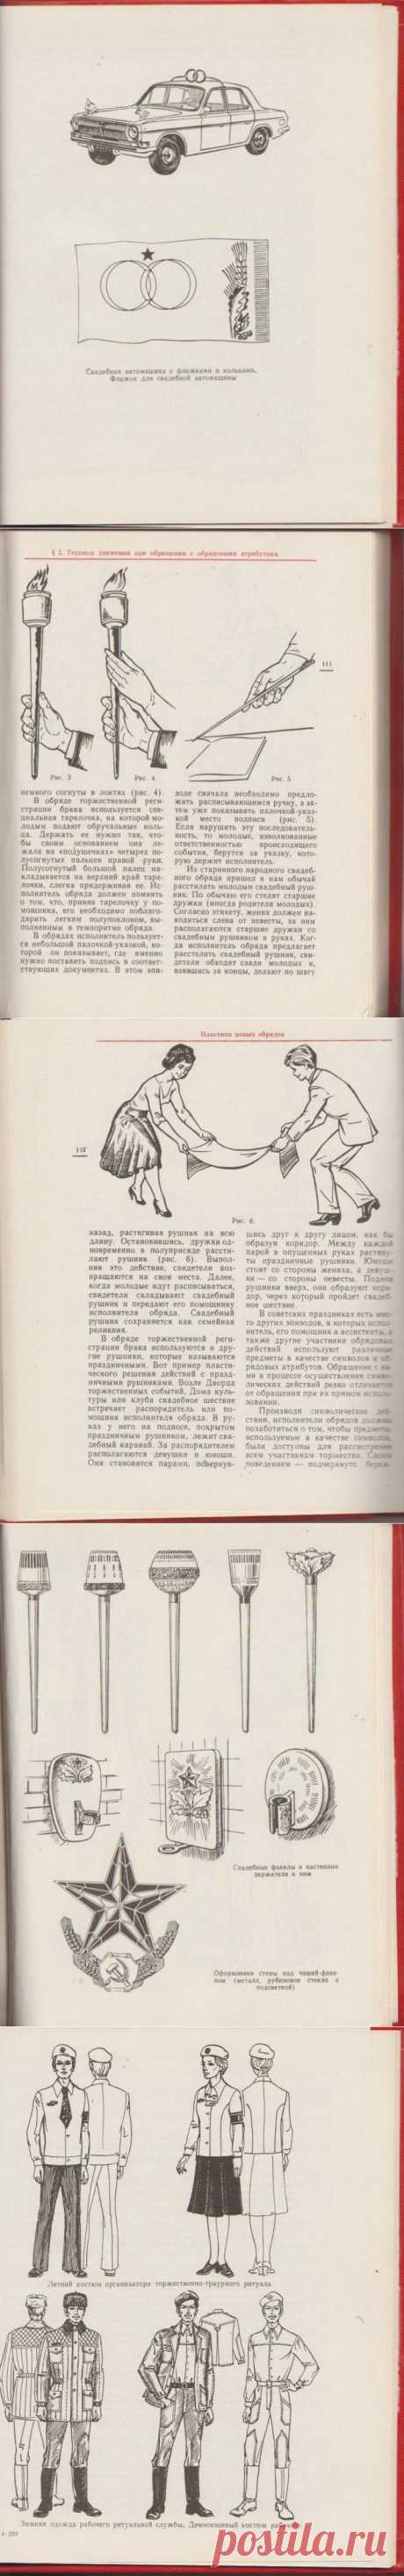 Социалистическая обрядность / Назад в СССР / Back in USSR